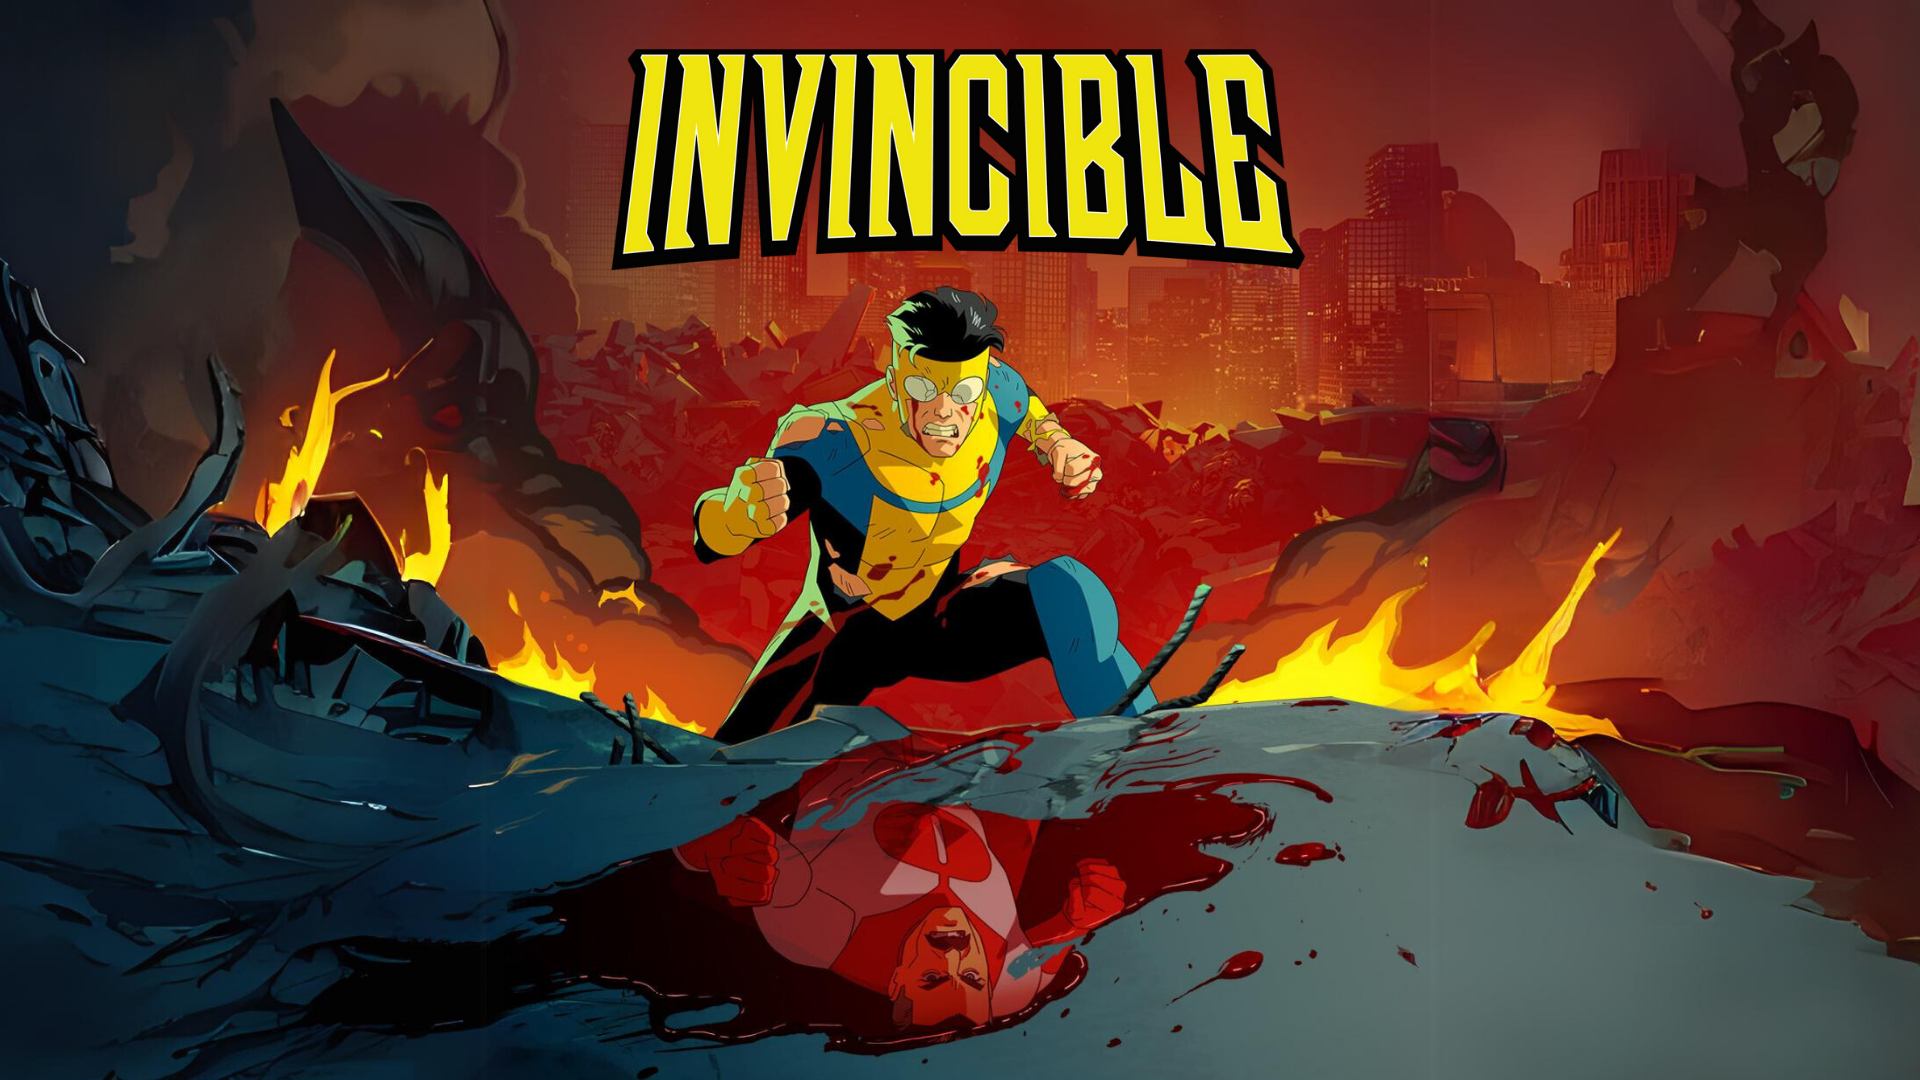 Invincible' temporada 2: Fecha de estreno, argumento y teaser